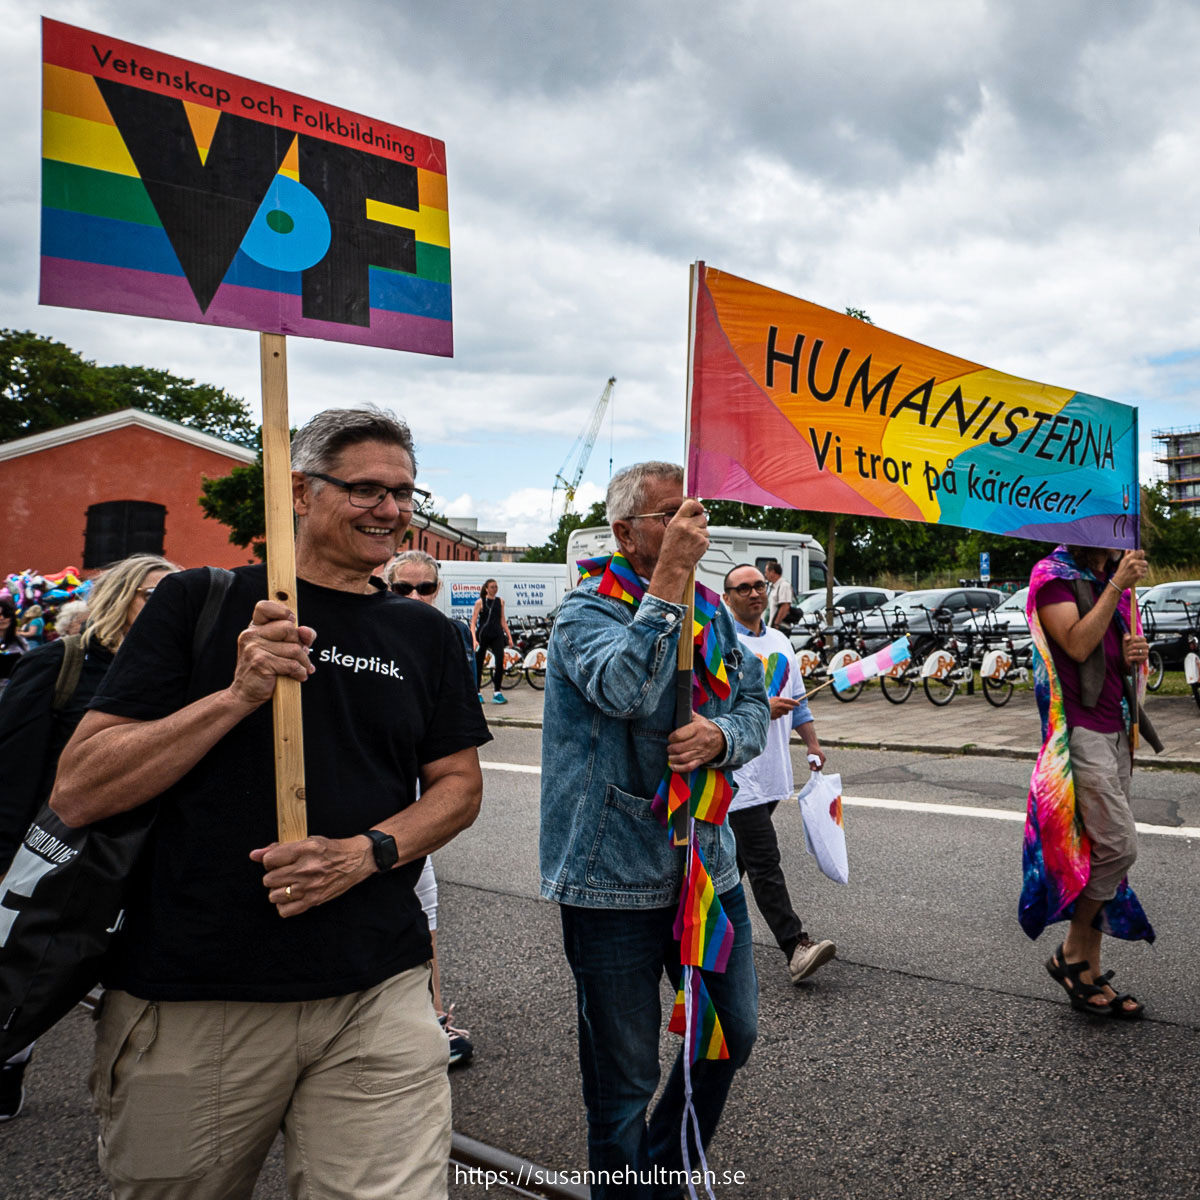 Plakat med texten "VoF" och banderoll med texten "Humansiterna Vi tror på kärleken!".